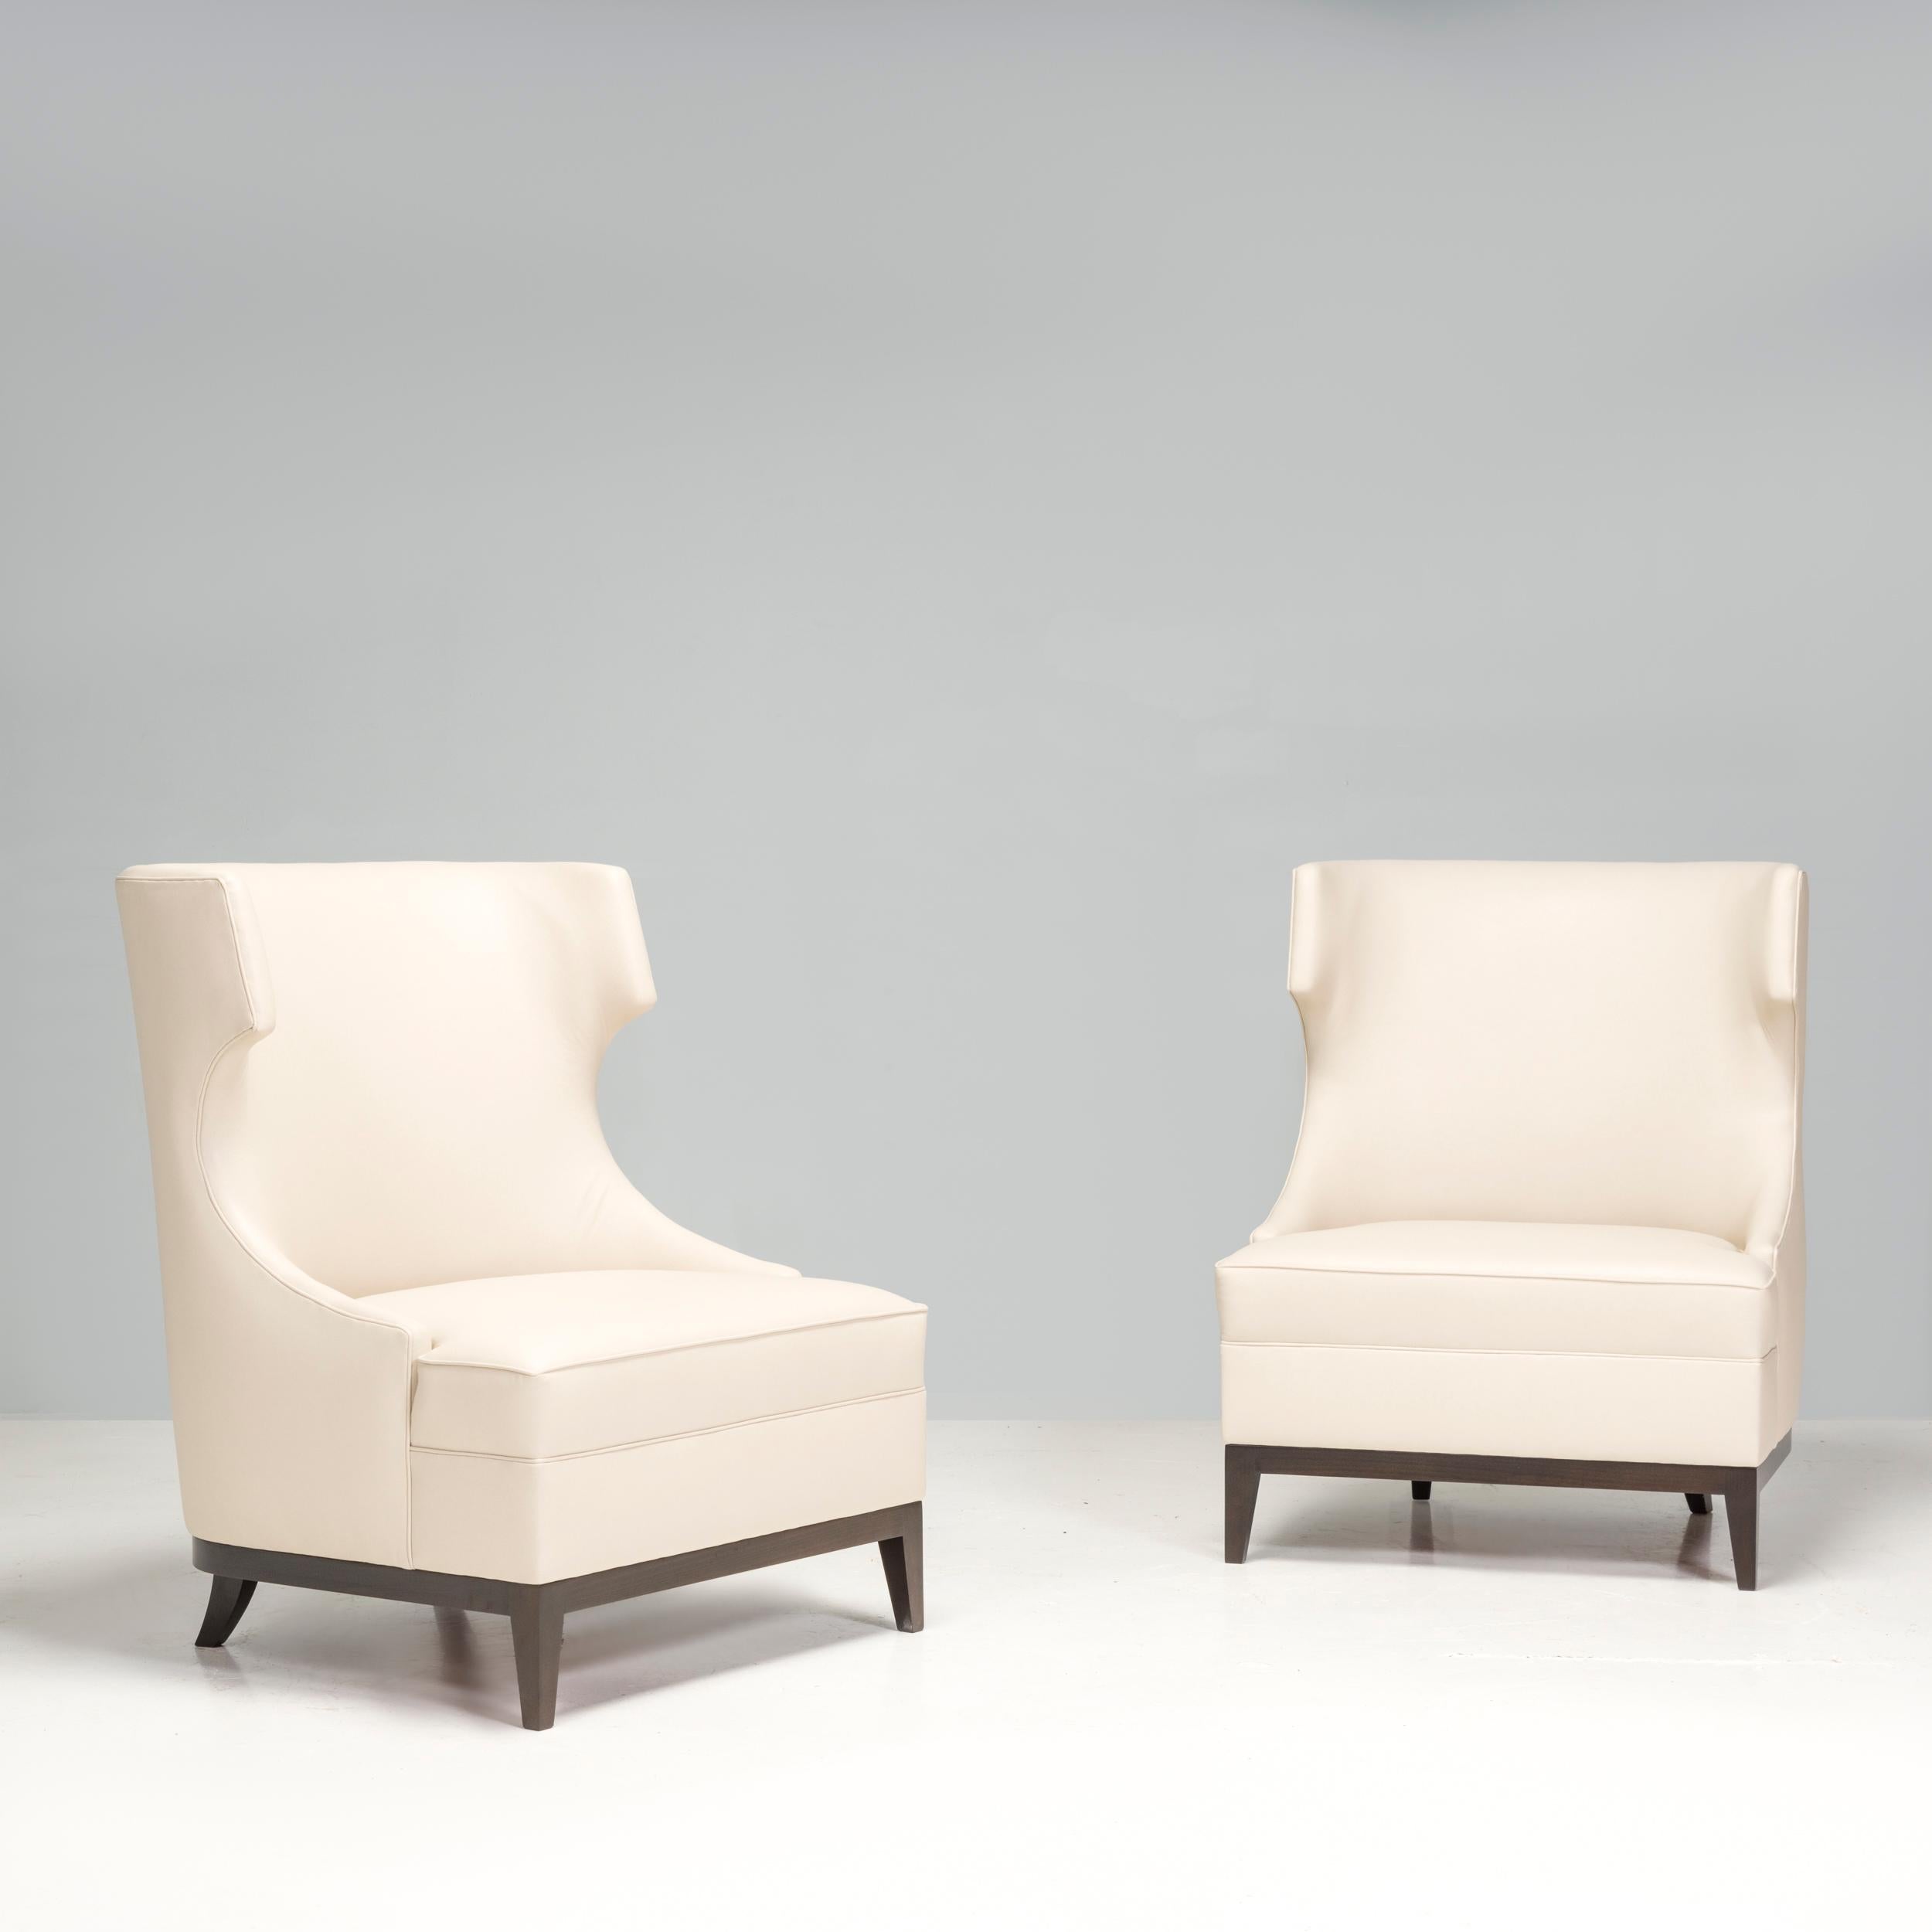 Ces fauteuils à dossier haut en cuir crème présentent un design impressionnant qui rehausserait n'importe quel espace de vie ou chambre à coucher. Sa palette de couleurs neutres lui permet de s'harmoniser avec un large éventail